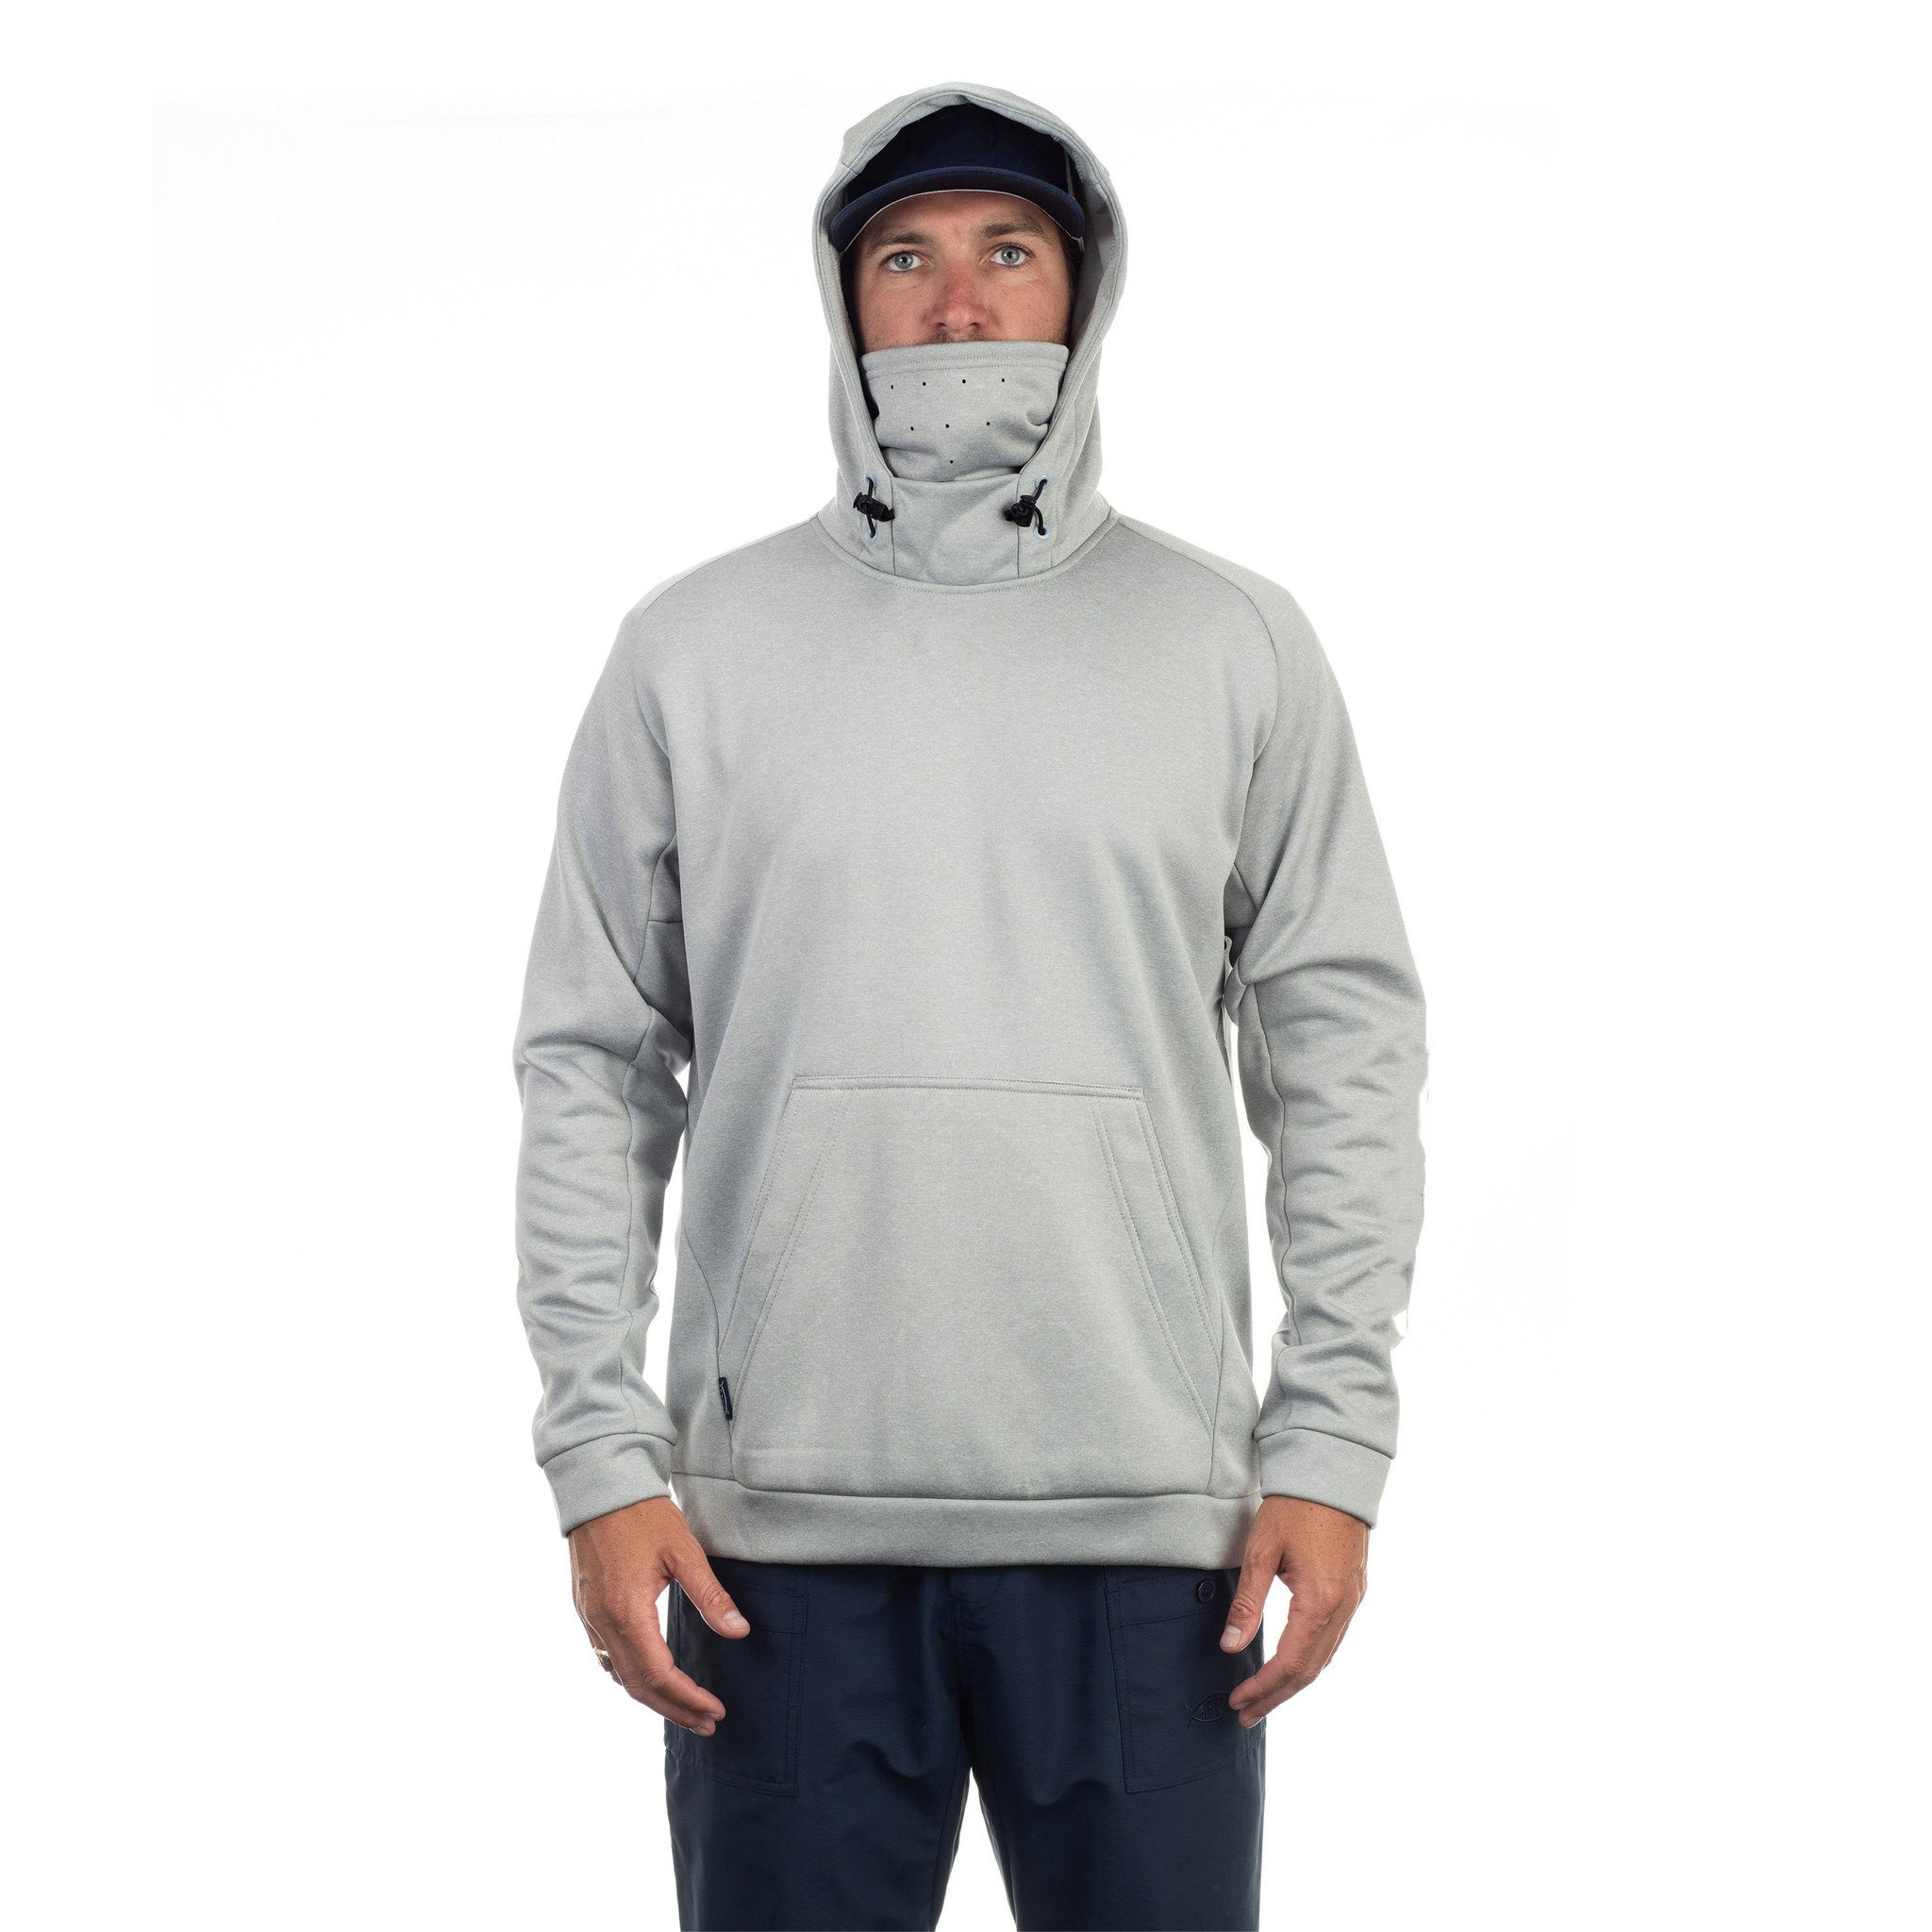 Prilagođeni logotip OEM proizvođača, 100% polietilenski spojeni tehnički prozračni pokrivač za lice, maskirana muška ribolovačka majica s kapuljačom